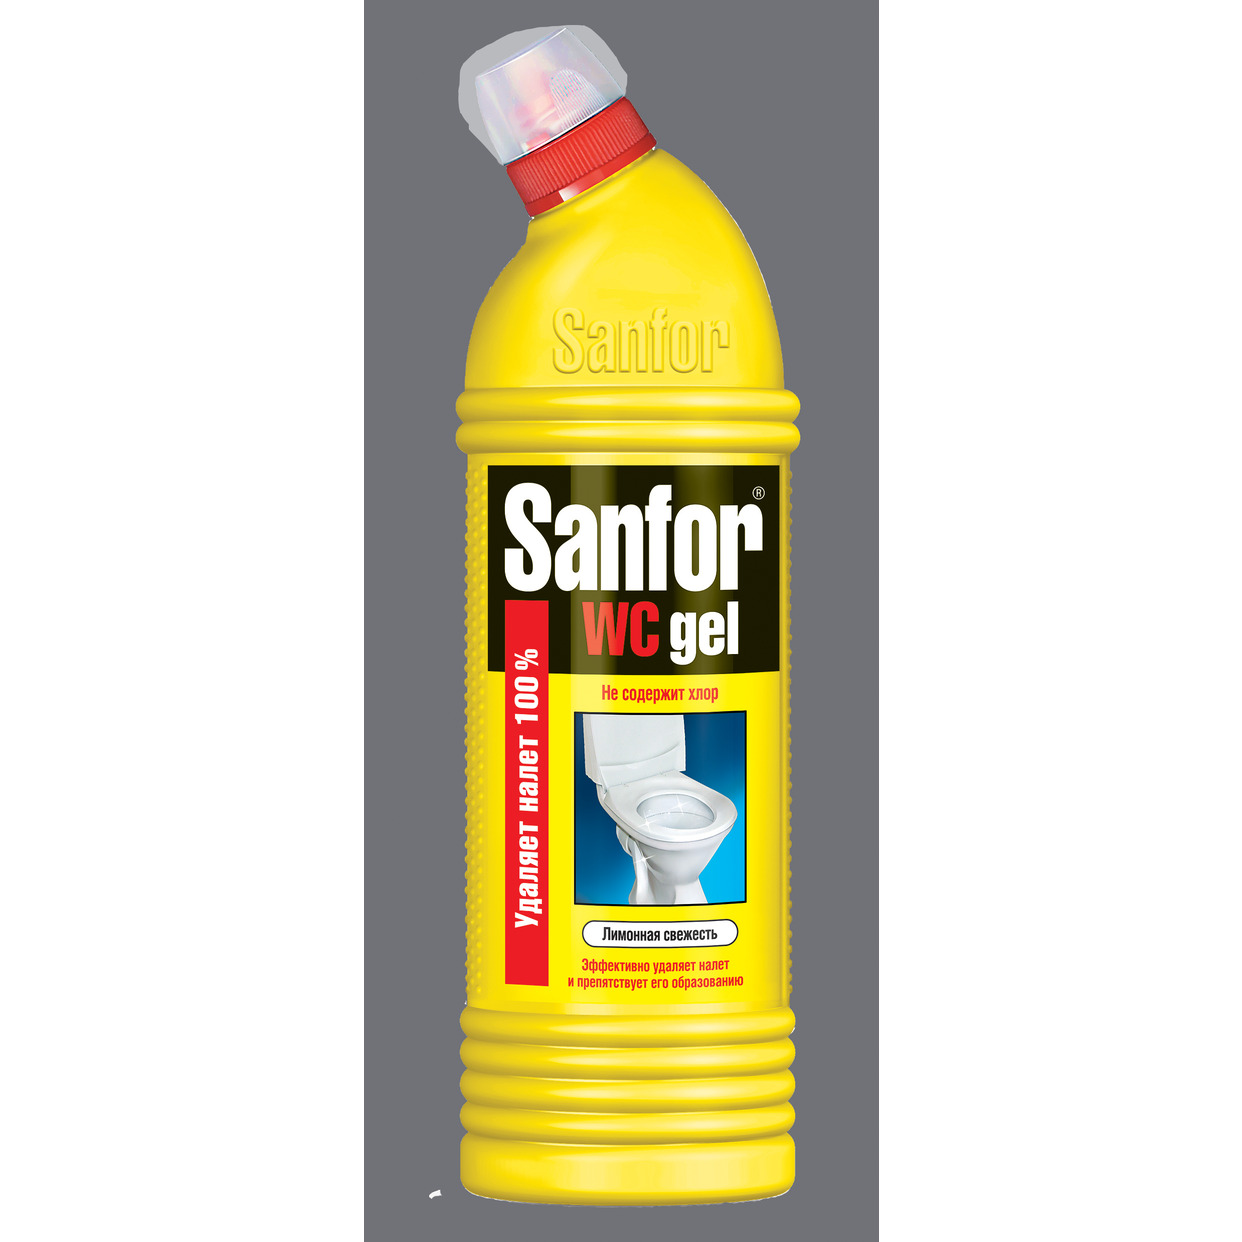 Средство для чистки унитаза Sanfor WC gel Лимонная свежесть 750г по акции в Пятерочке